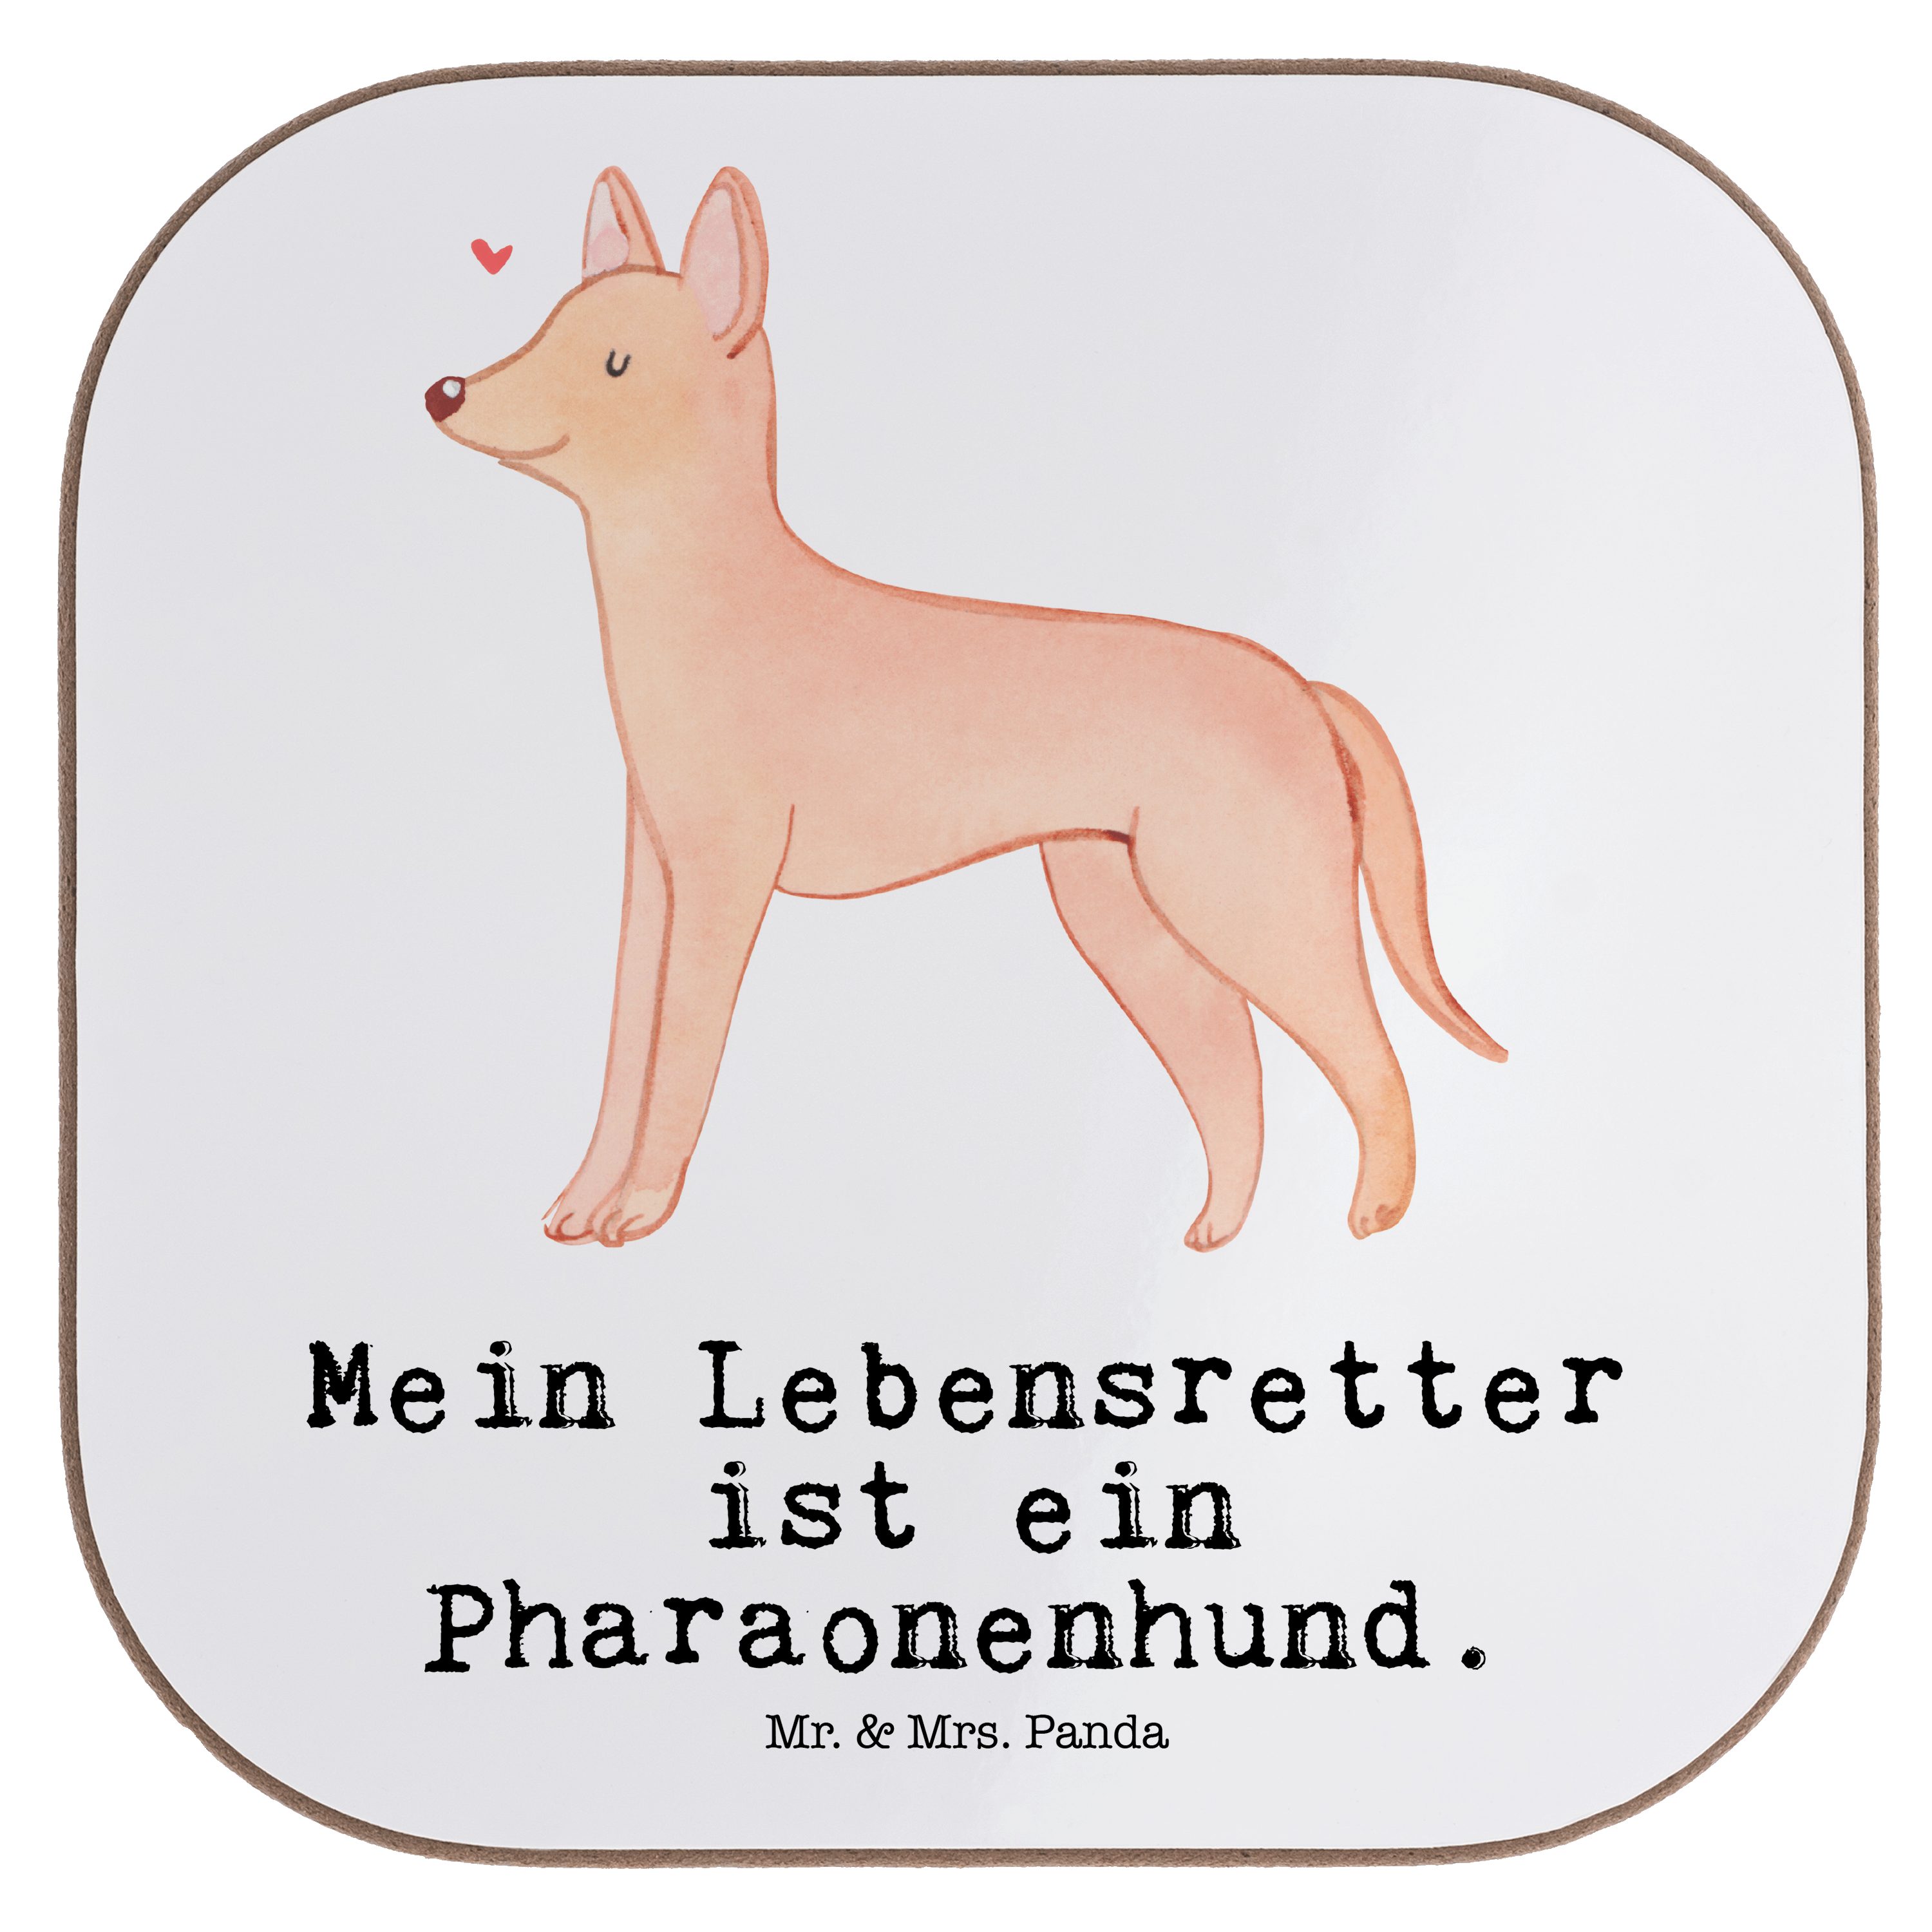 Mr. & Mrs. Panda Getränkeuntersetzer Pharaonenhund Lebensretter - Weiß - Geschenk, Untersetzer Gläser, Pha, 1-tlg. | Getränkeuntersetzer